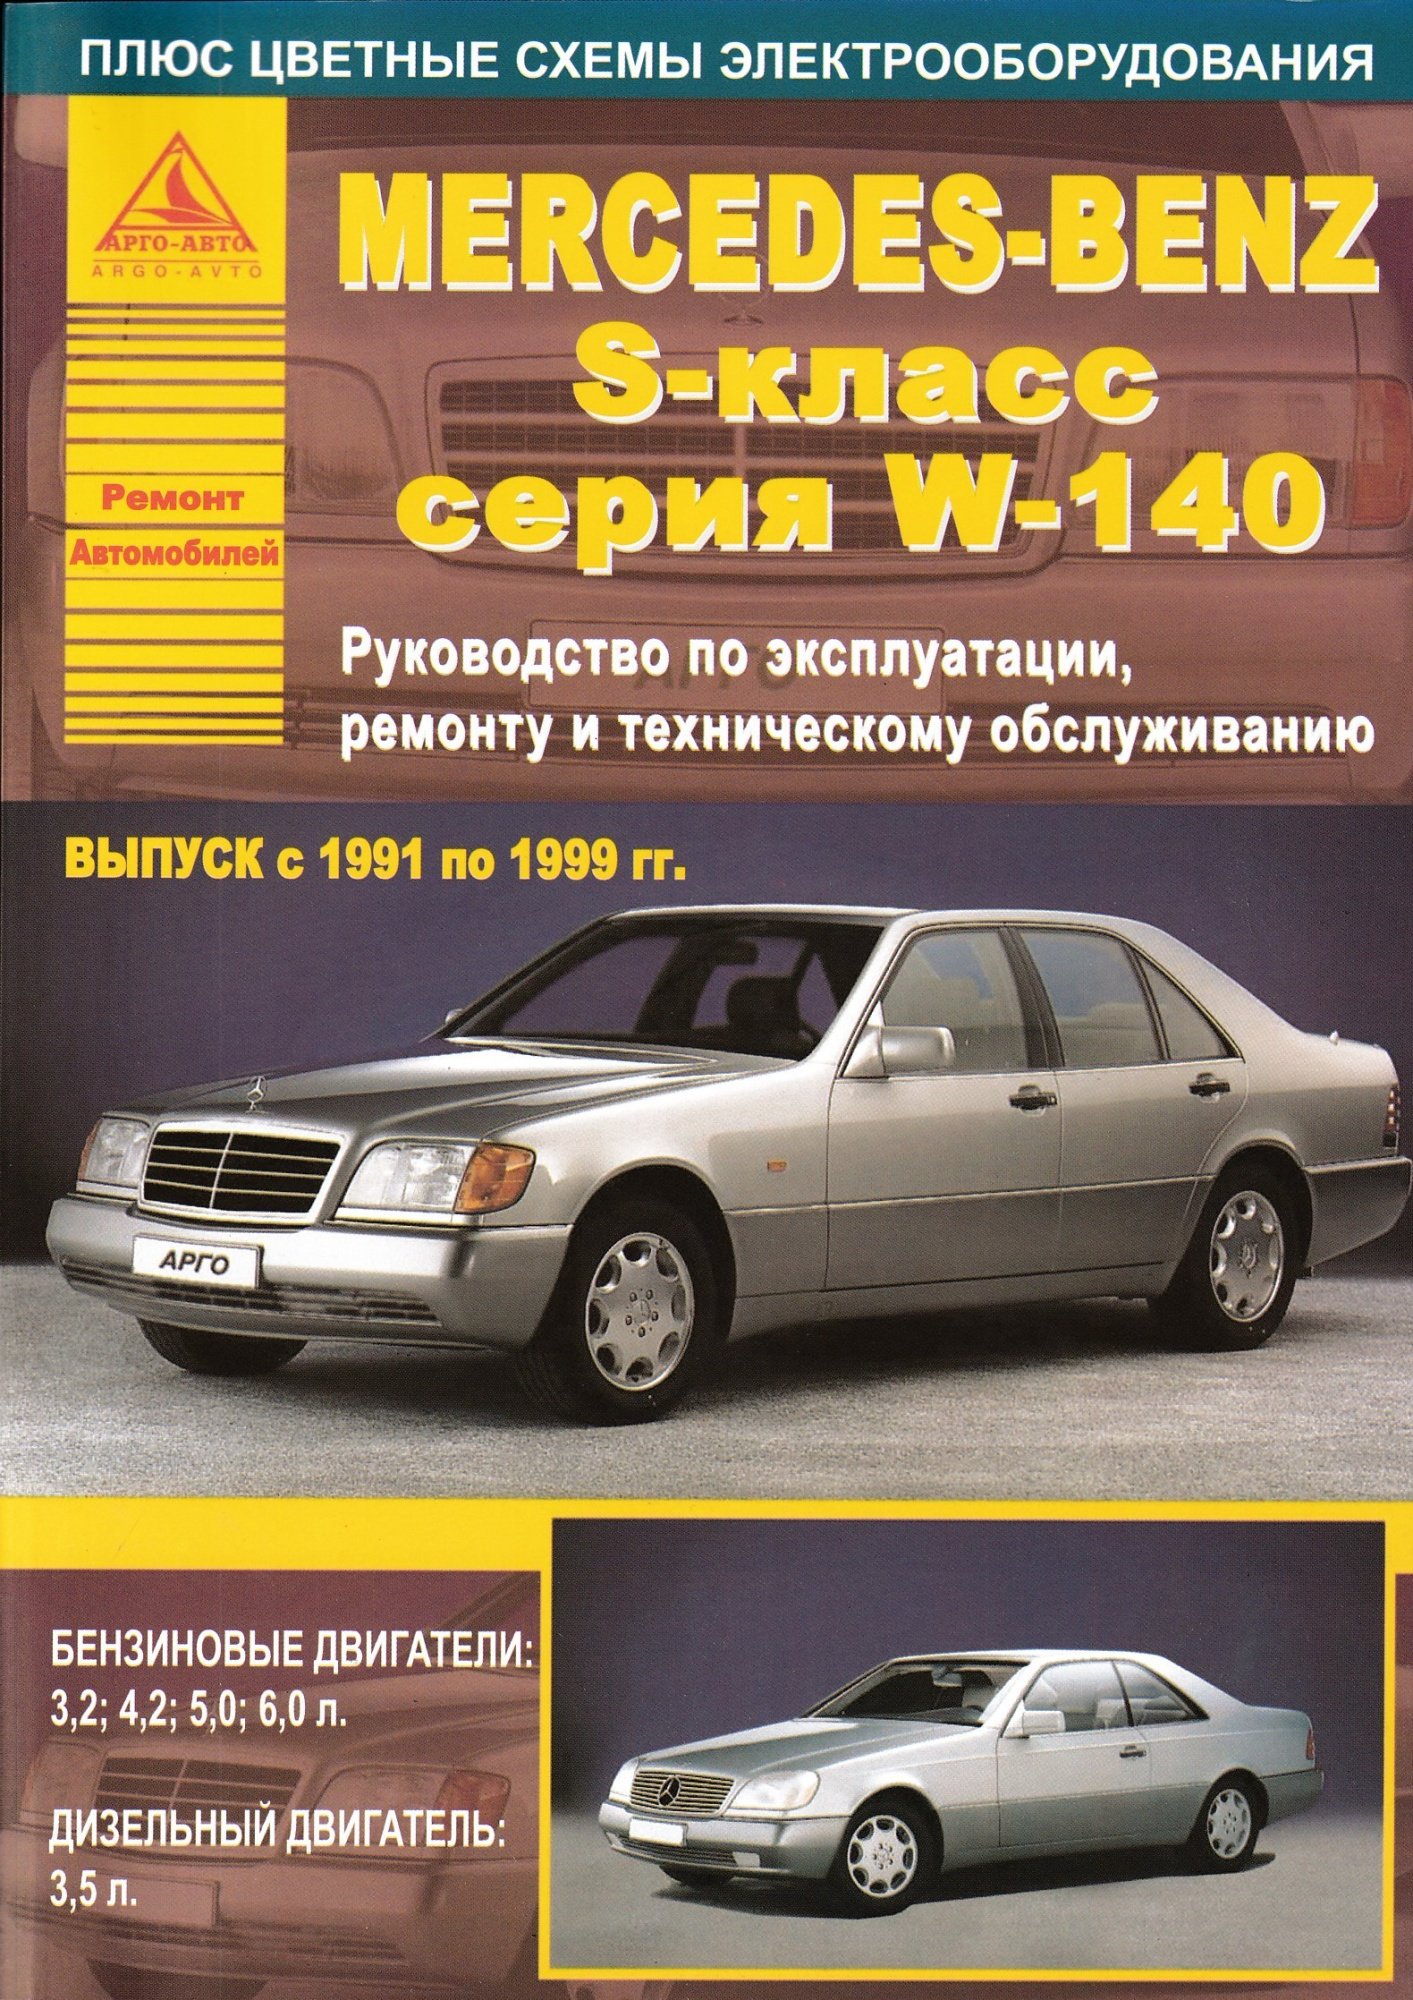 Mercedes-Benz S-класс серии W140 1991-1999. Книга, руководство по ремонту и эксплуатации. Атласы Автомобилей